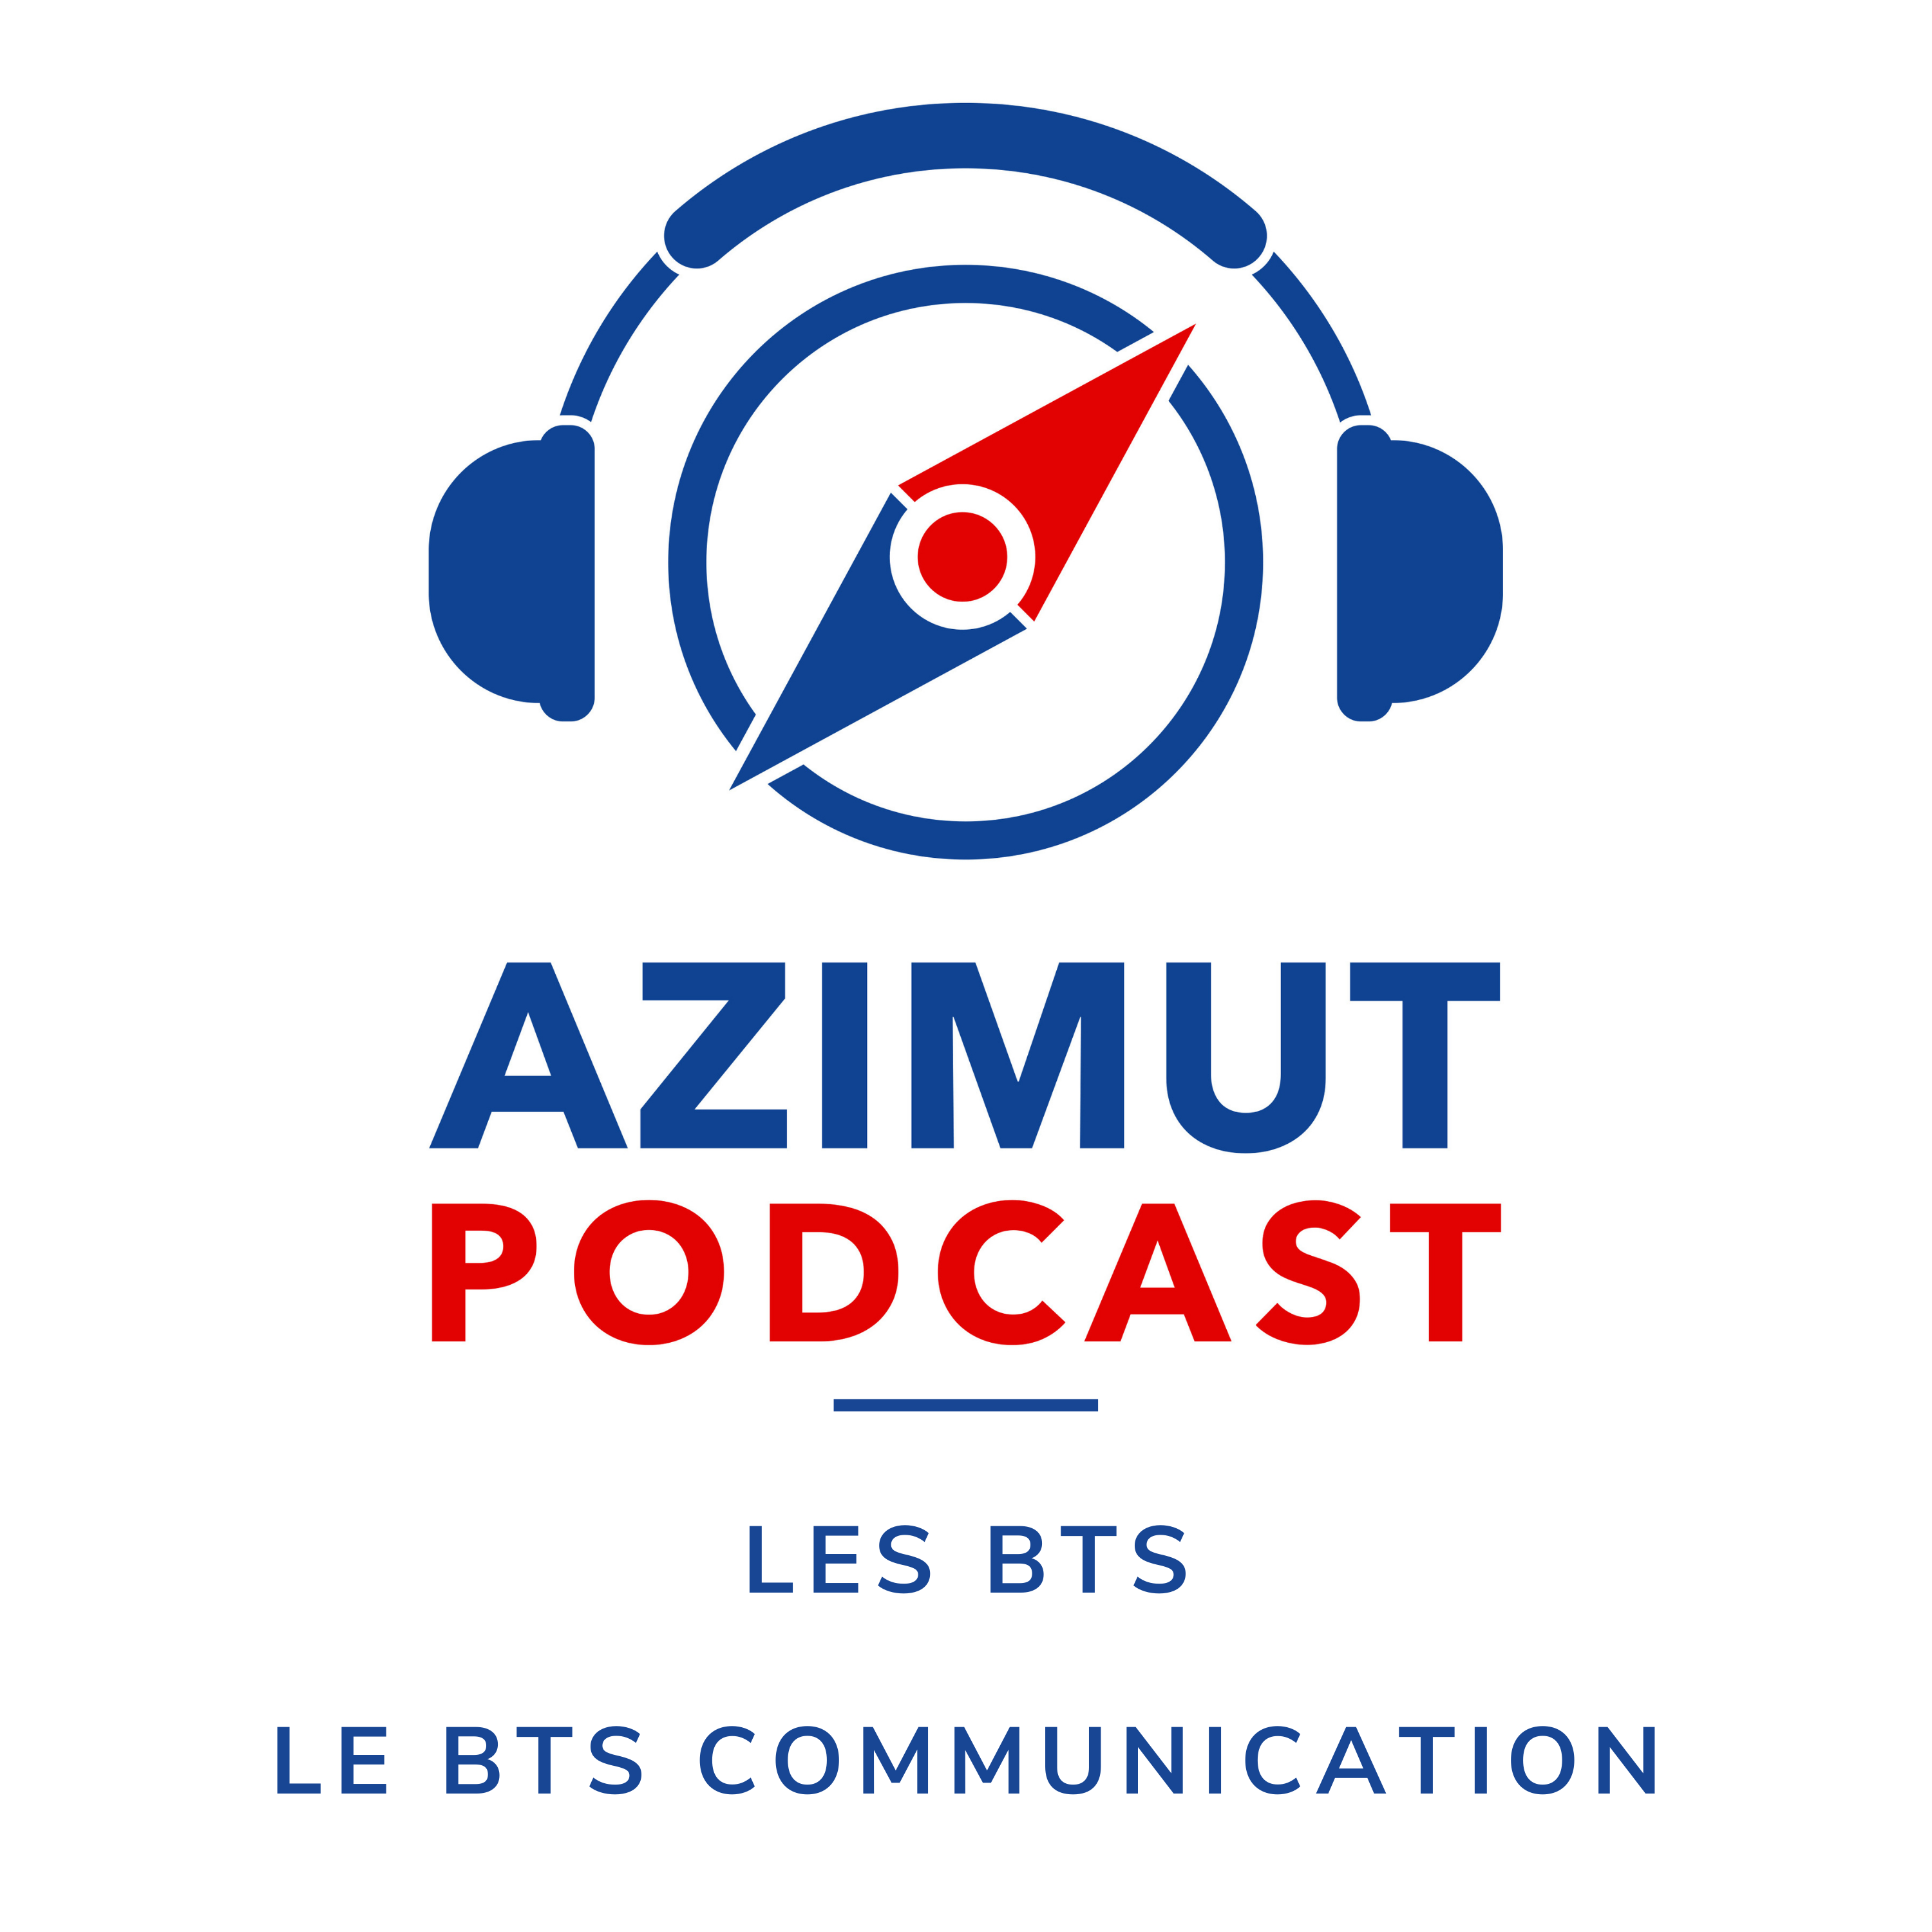 Le BTS Communication | LES BTS